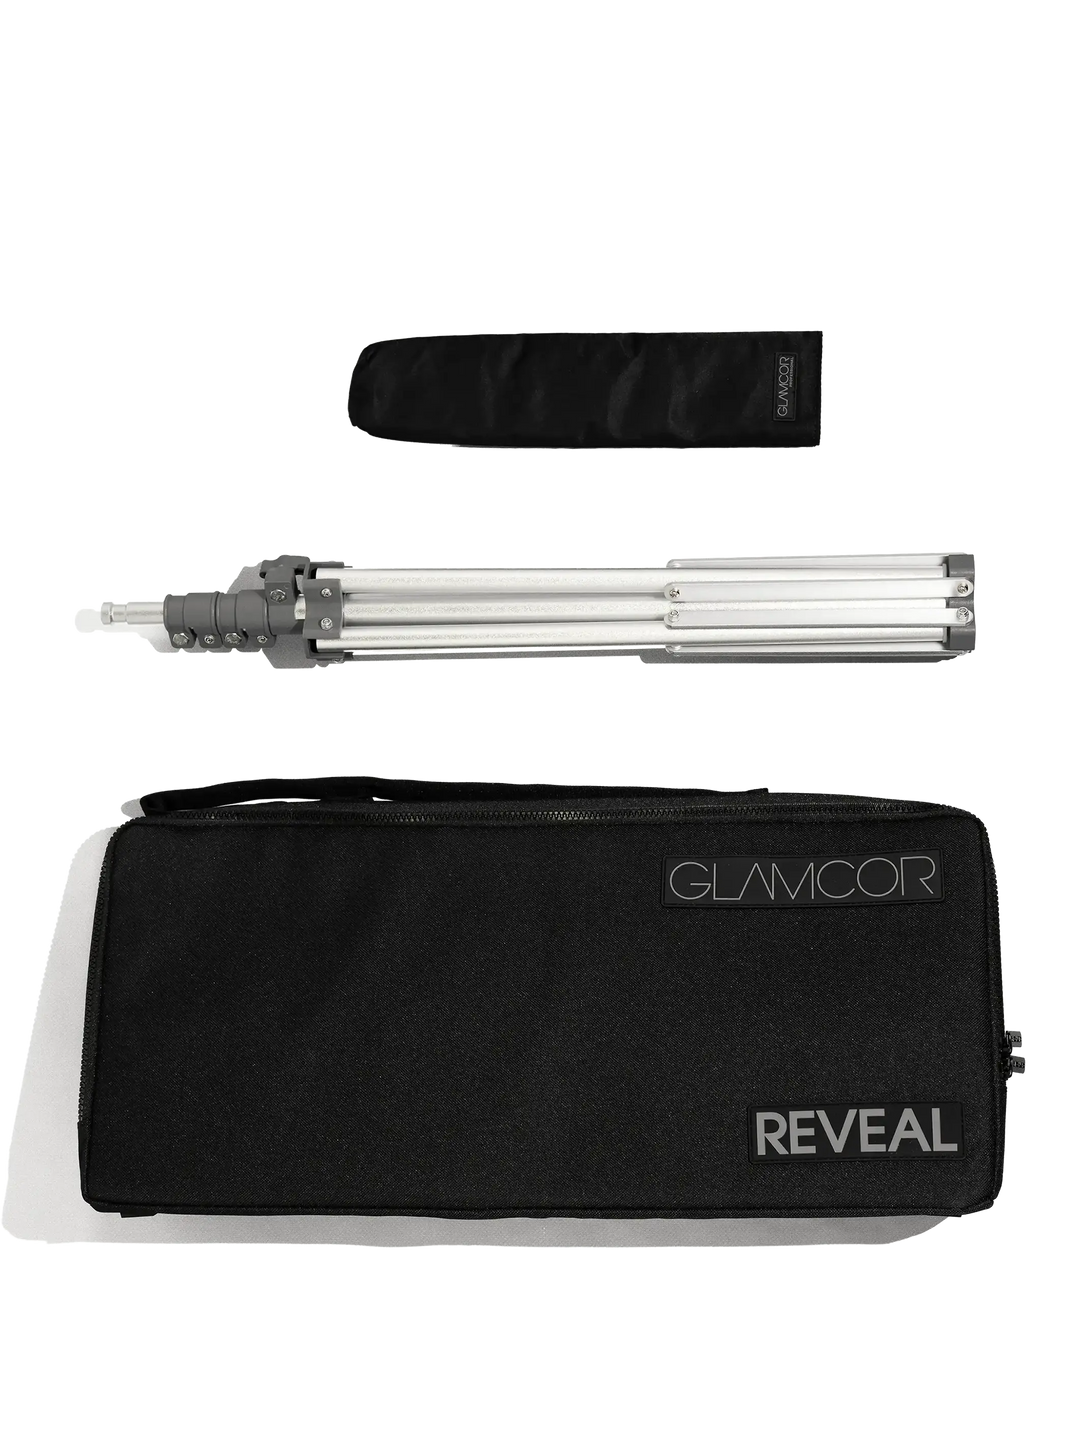 REVEAL EVA KIT | bag + telescopic support for Glamcor lamps